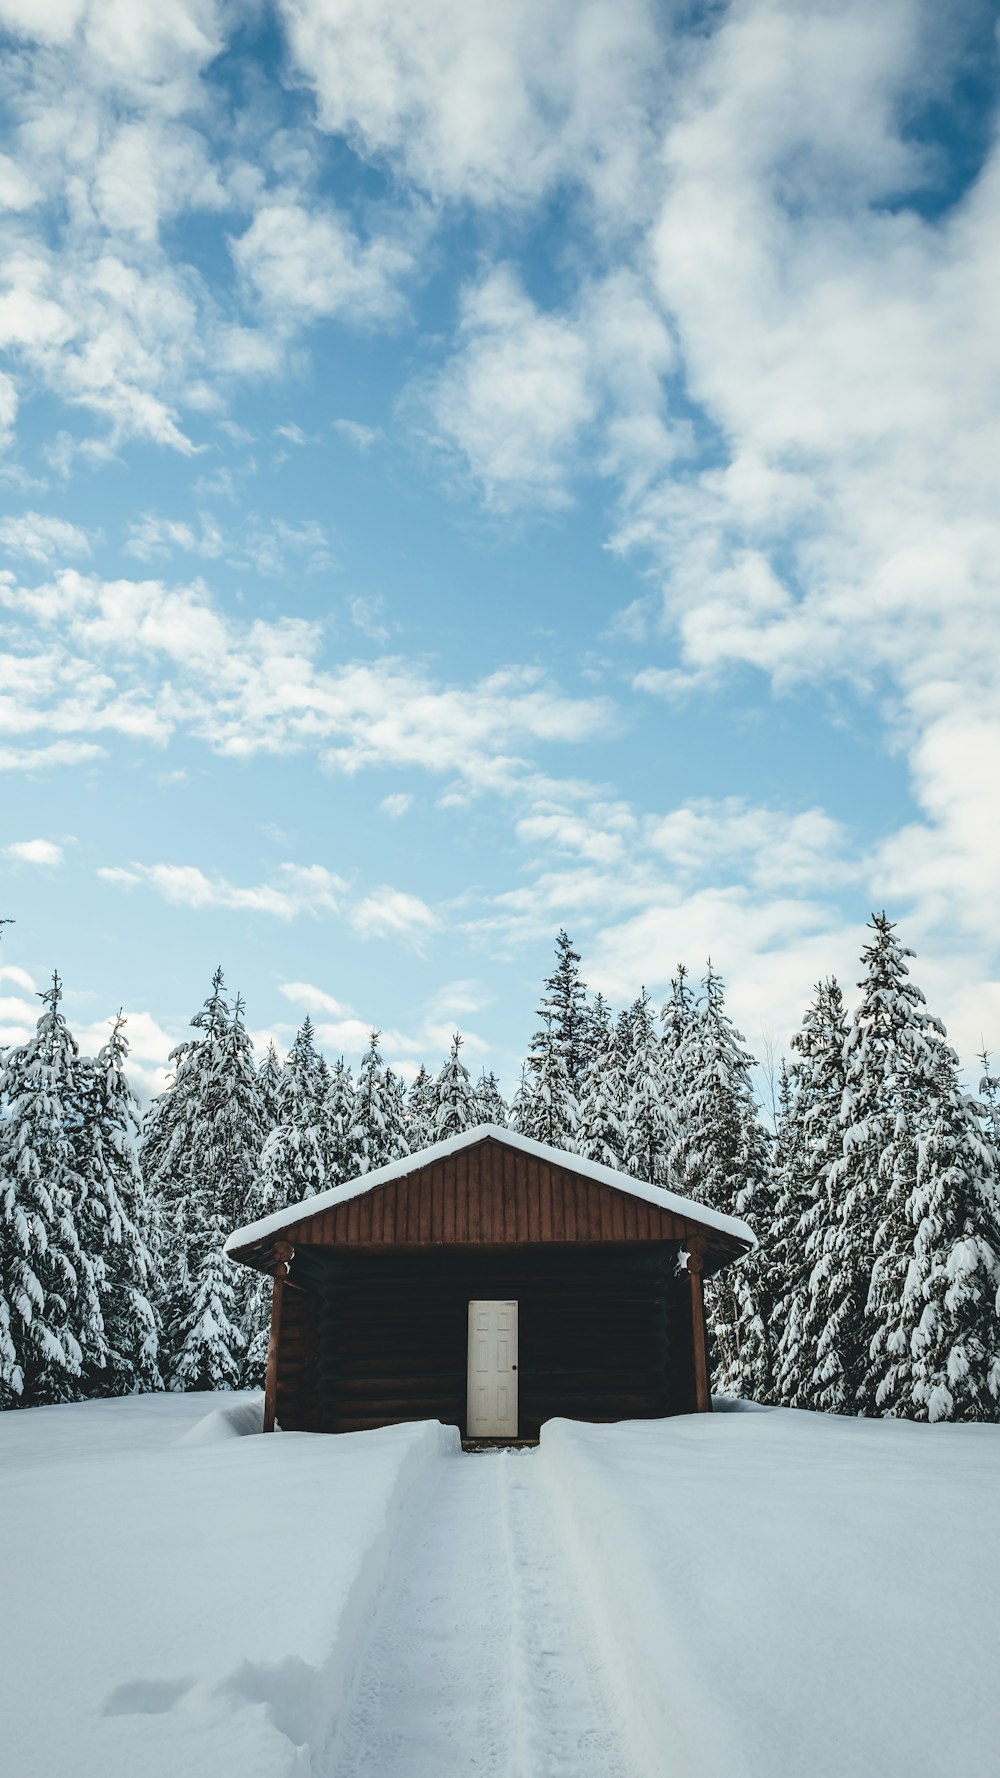 Casa marrón de 1 planta rodeada de árboles y nieve